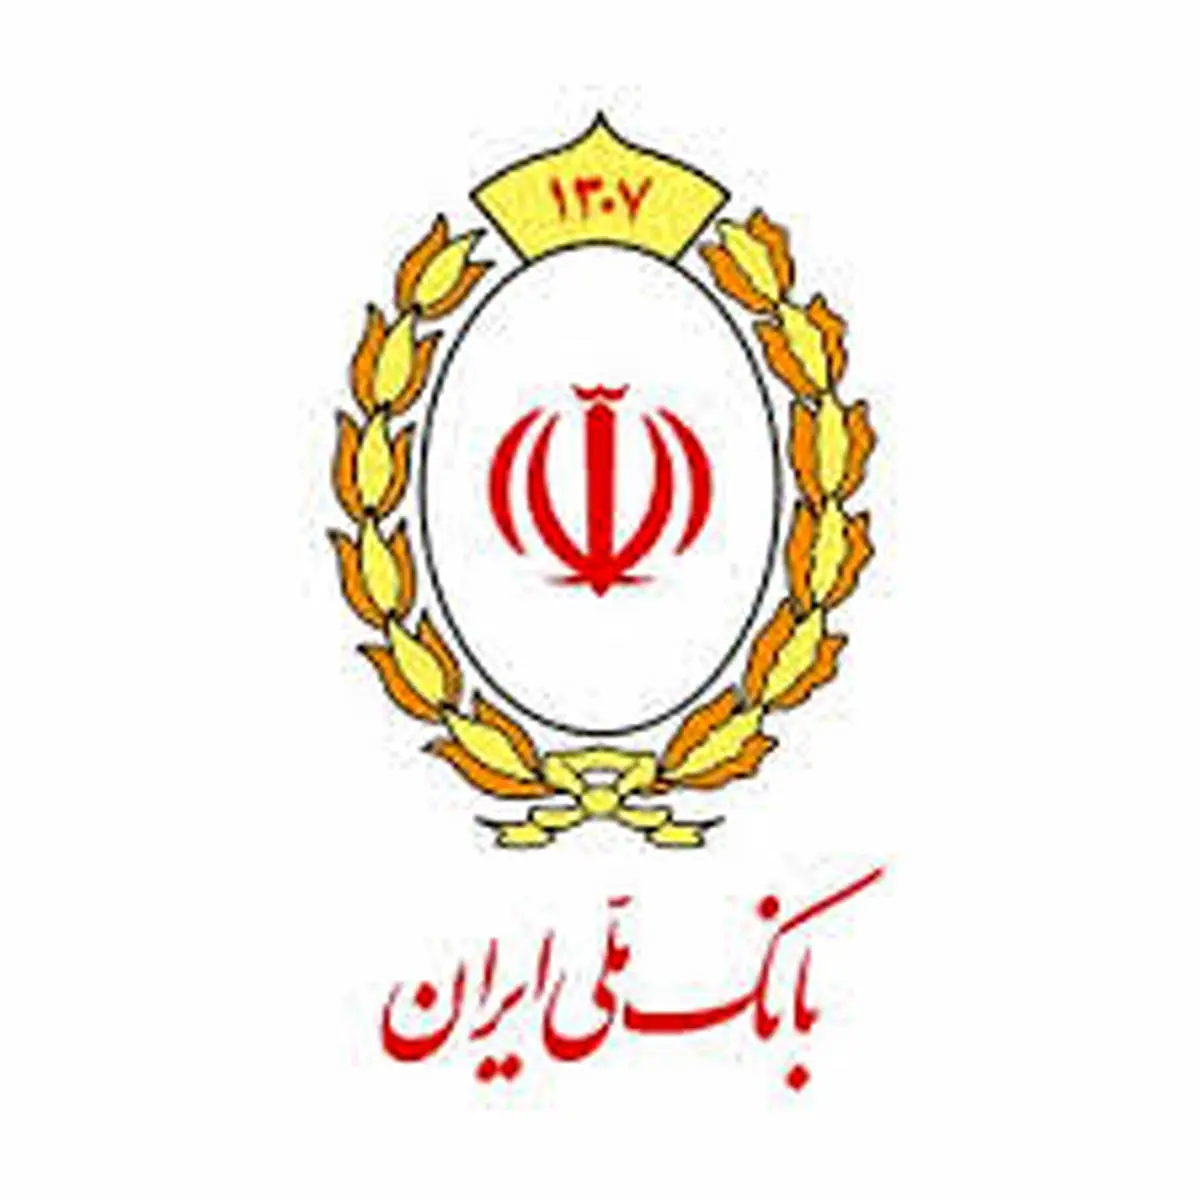 تکمیل زنجیره تولید آرد کشور با بانک ملی ایران

